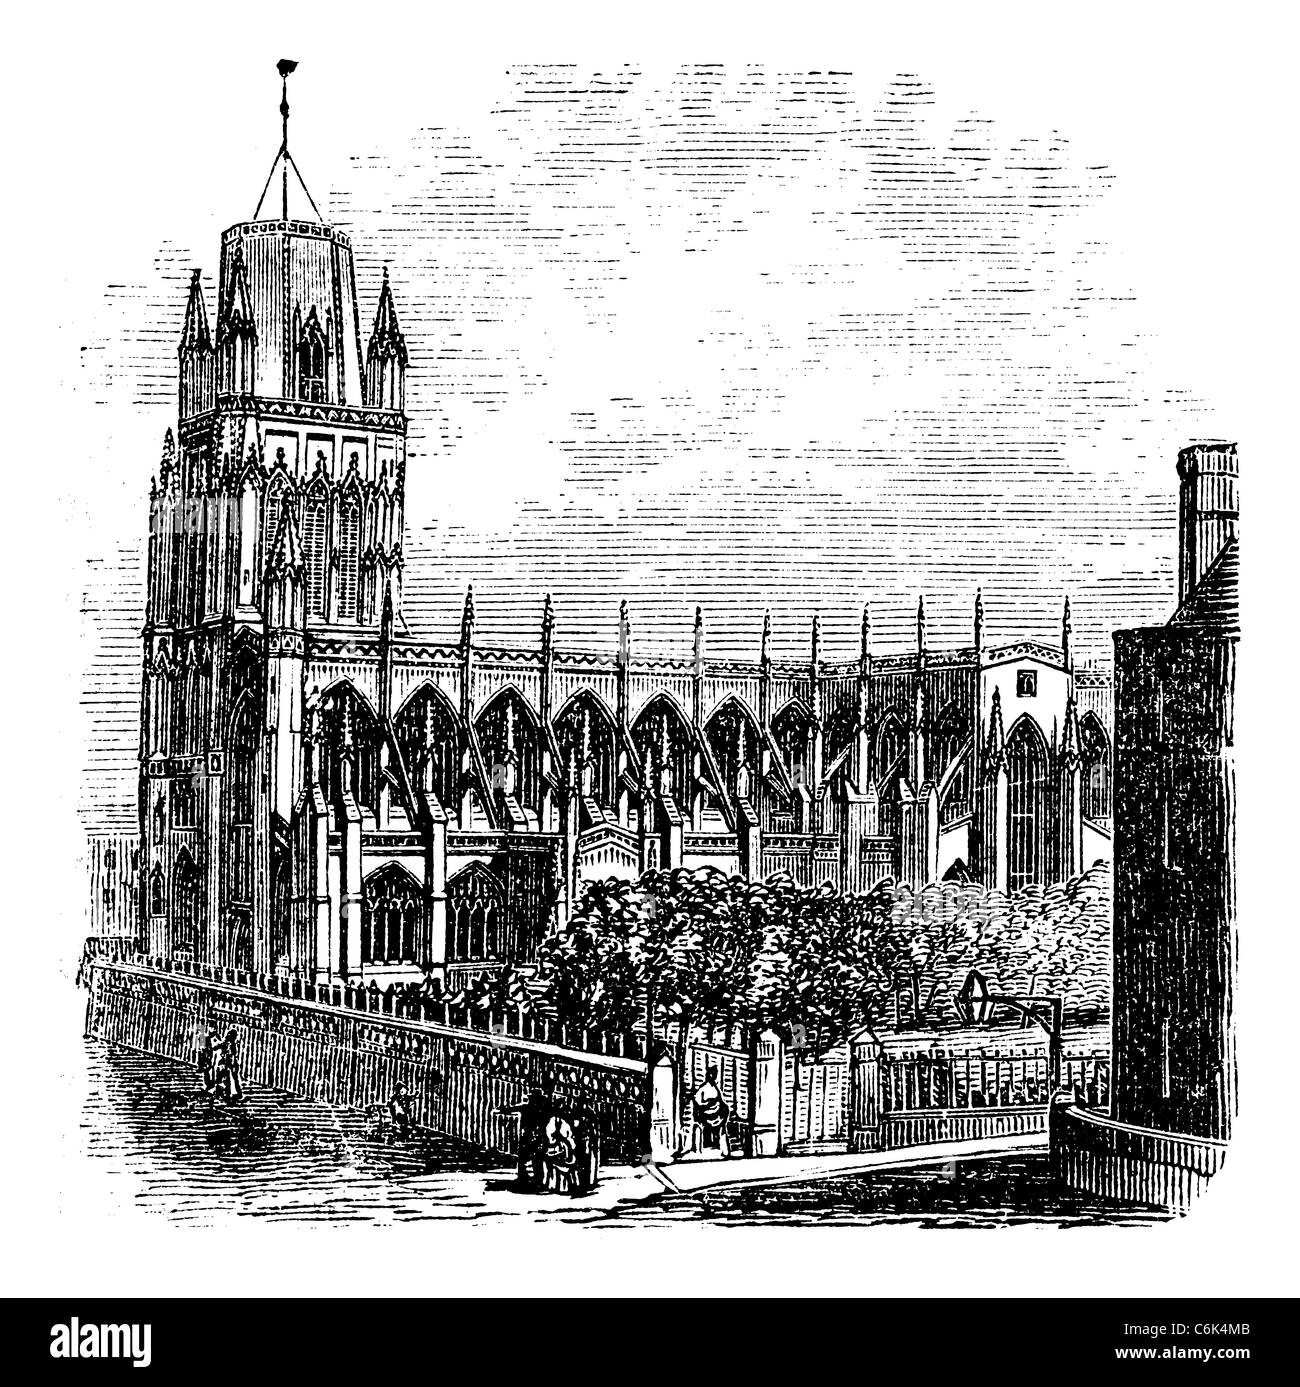 Saint Mary Redcliffe - église anglicane à Bristol, Angleterre (Royaume-Uni). Gravure de 1890 Vintage. Banque D'Images